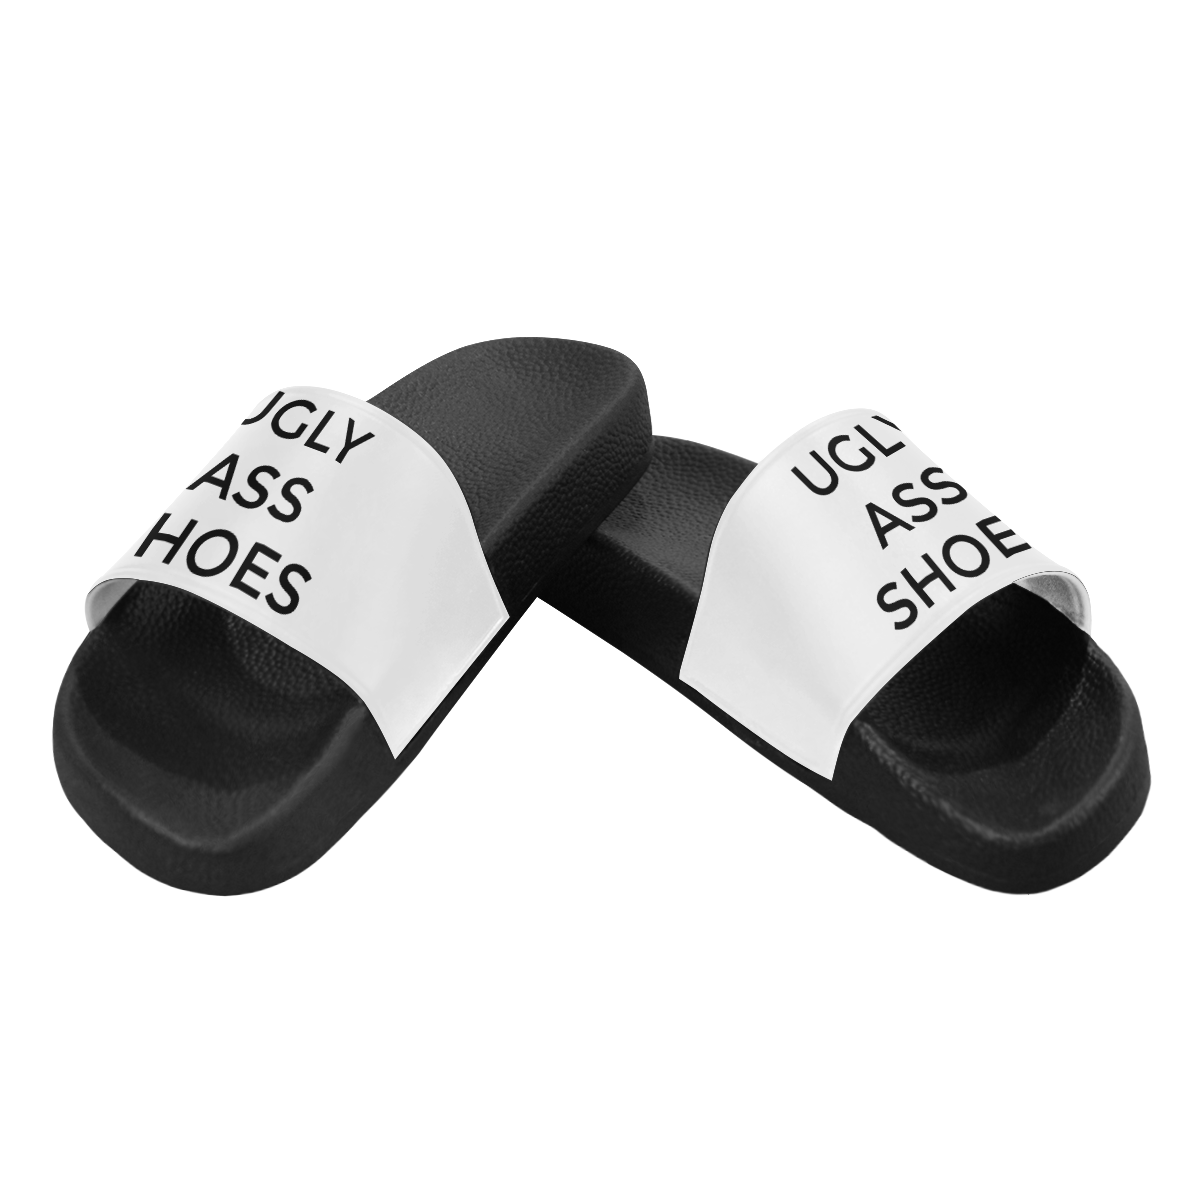 shoes Men's Slide Sandals/Large Size (Model 057)